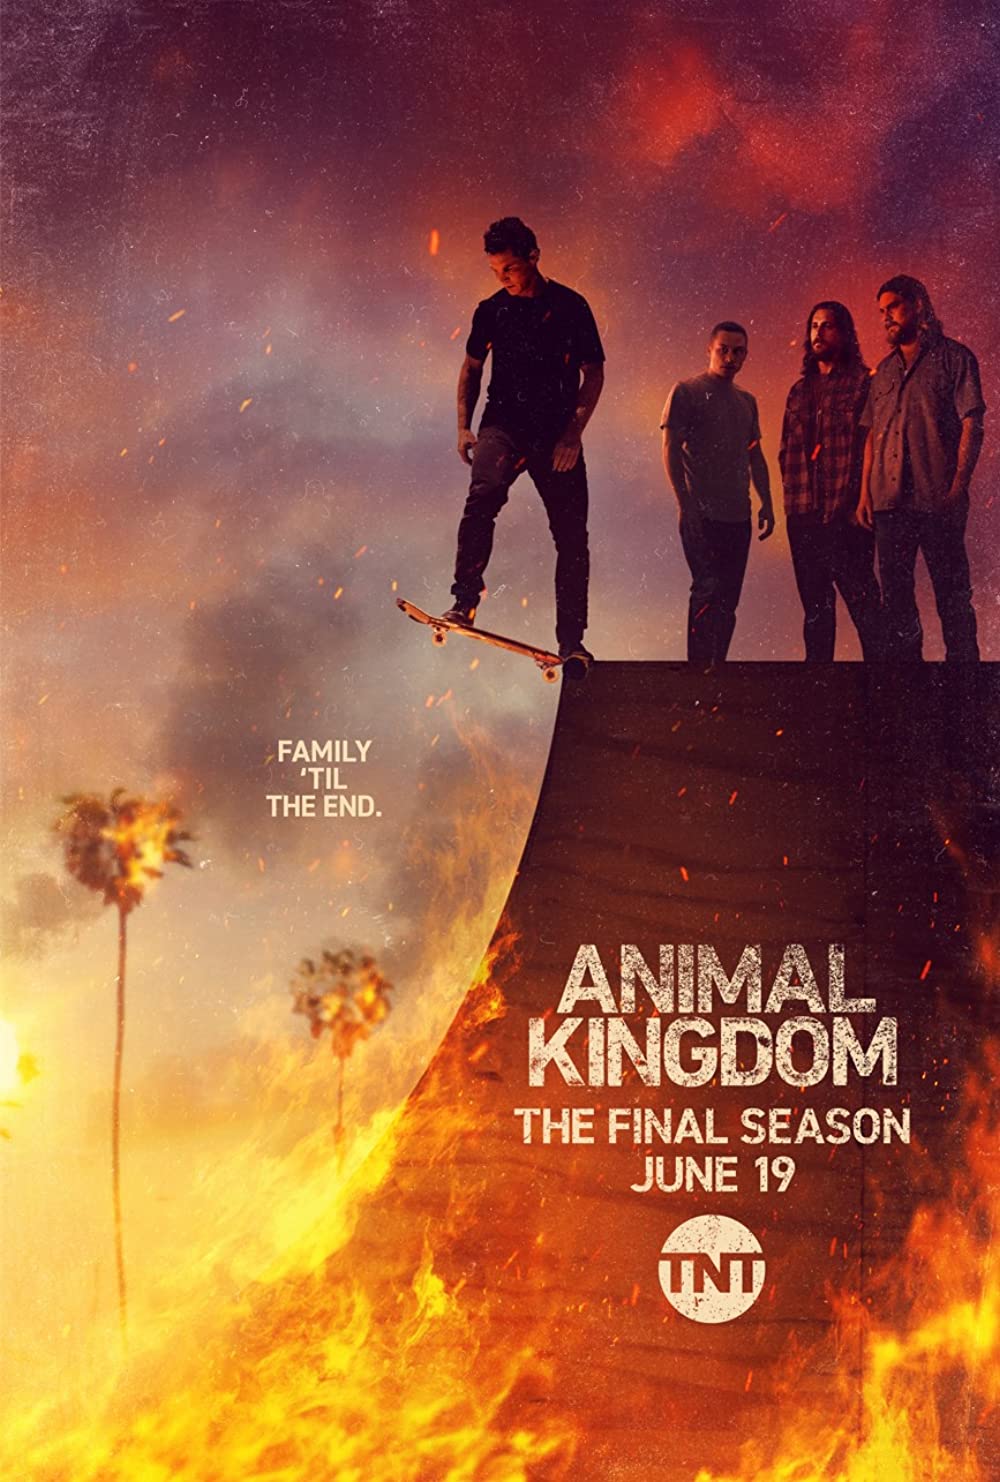 ดูหนังออนไลน์ Animal Kingdom Season 1 EP.2 แอนนิเมิล คิงด้อม ซีซั่น 1 ตอนที่ 2 (ซับไทย)